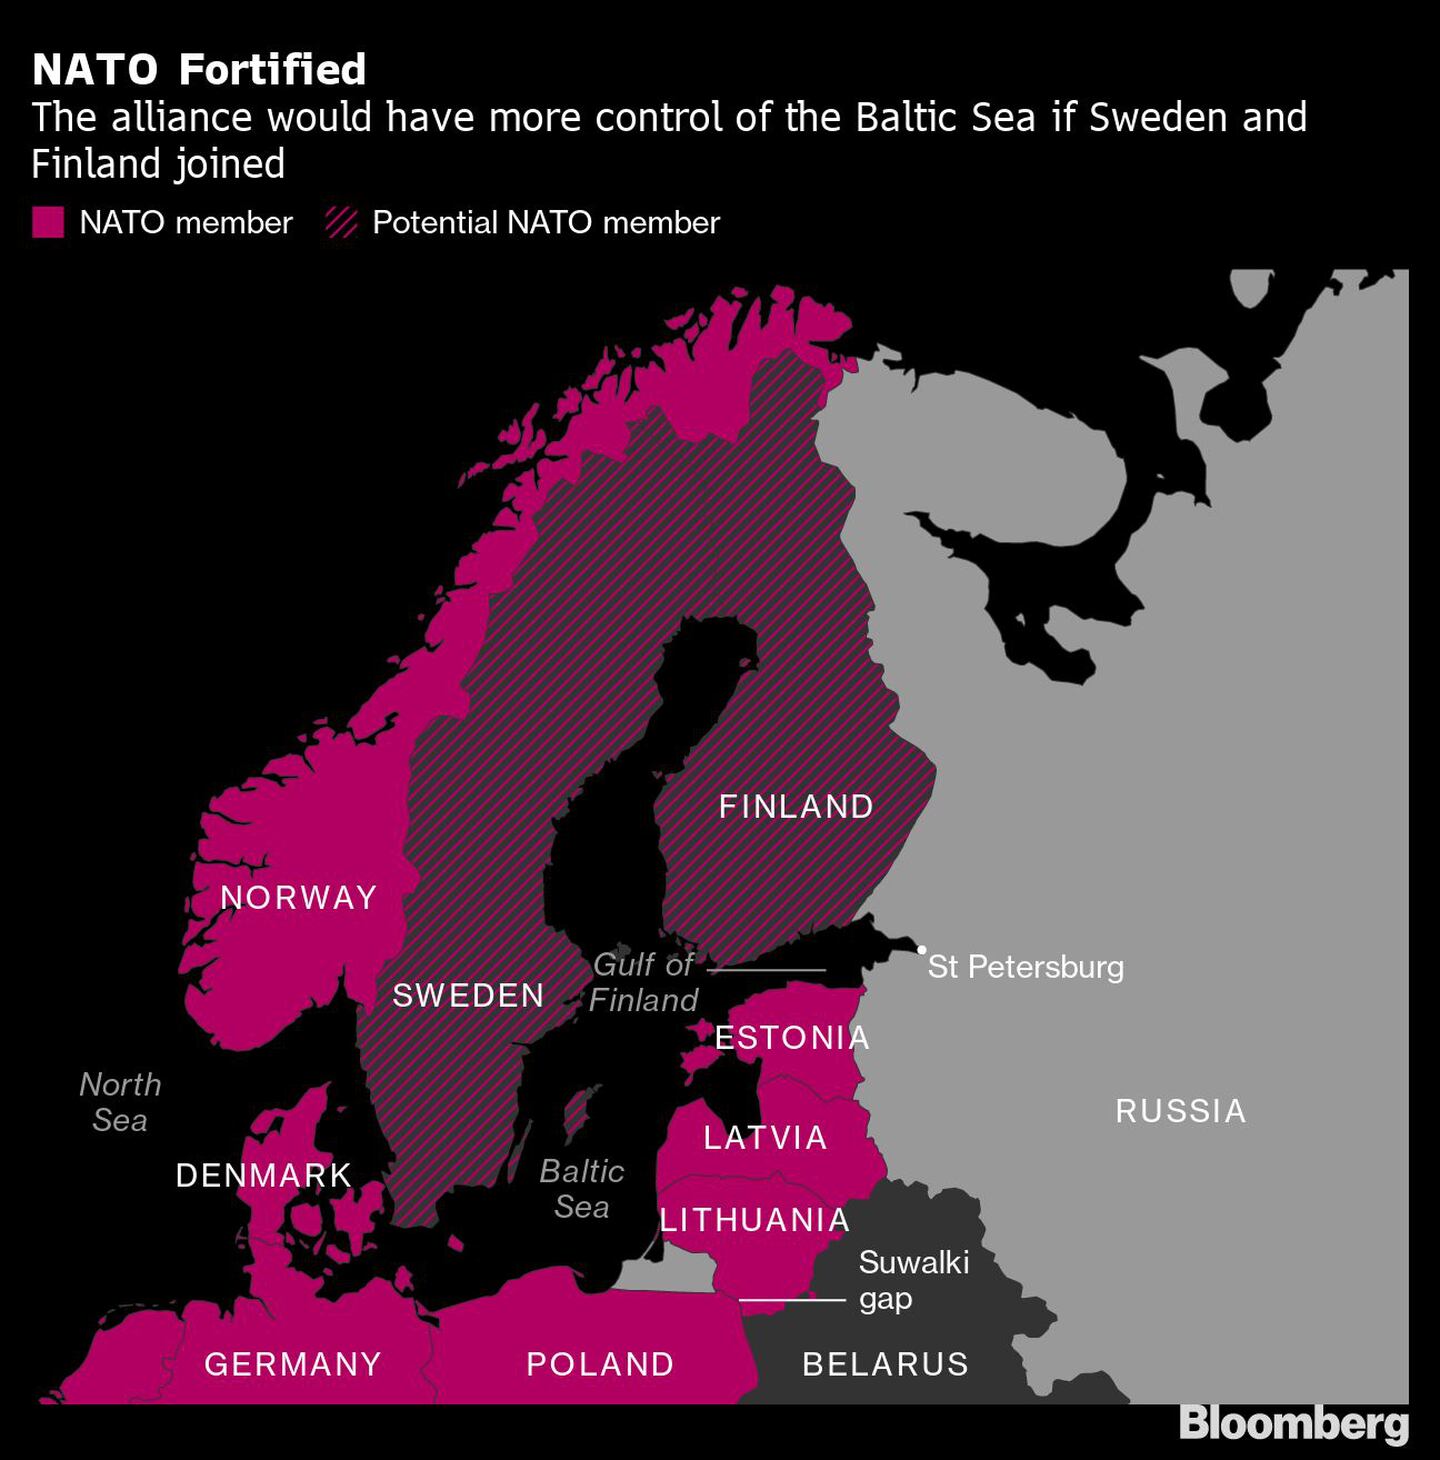 En rosa: miembro de la OTAN
Rayado: Potencial miembro de la OTANdfd